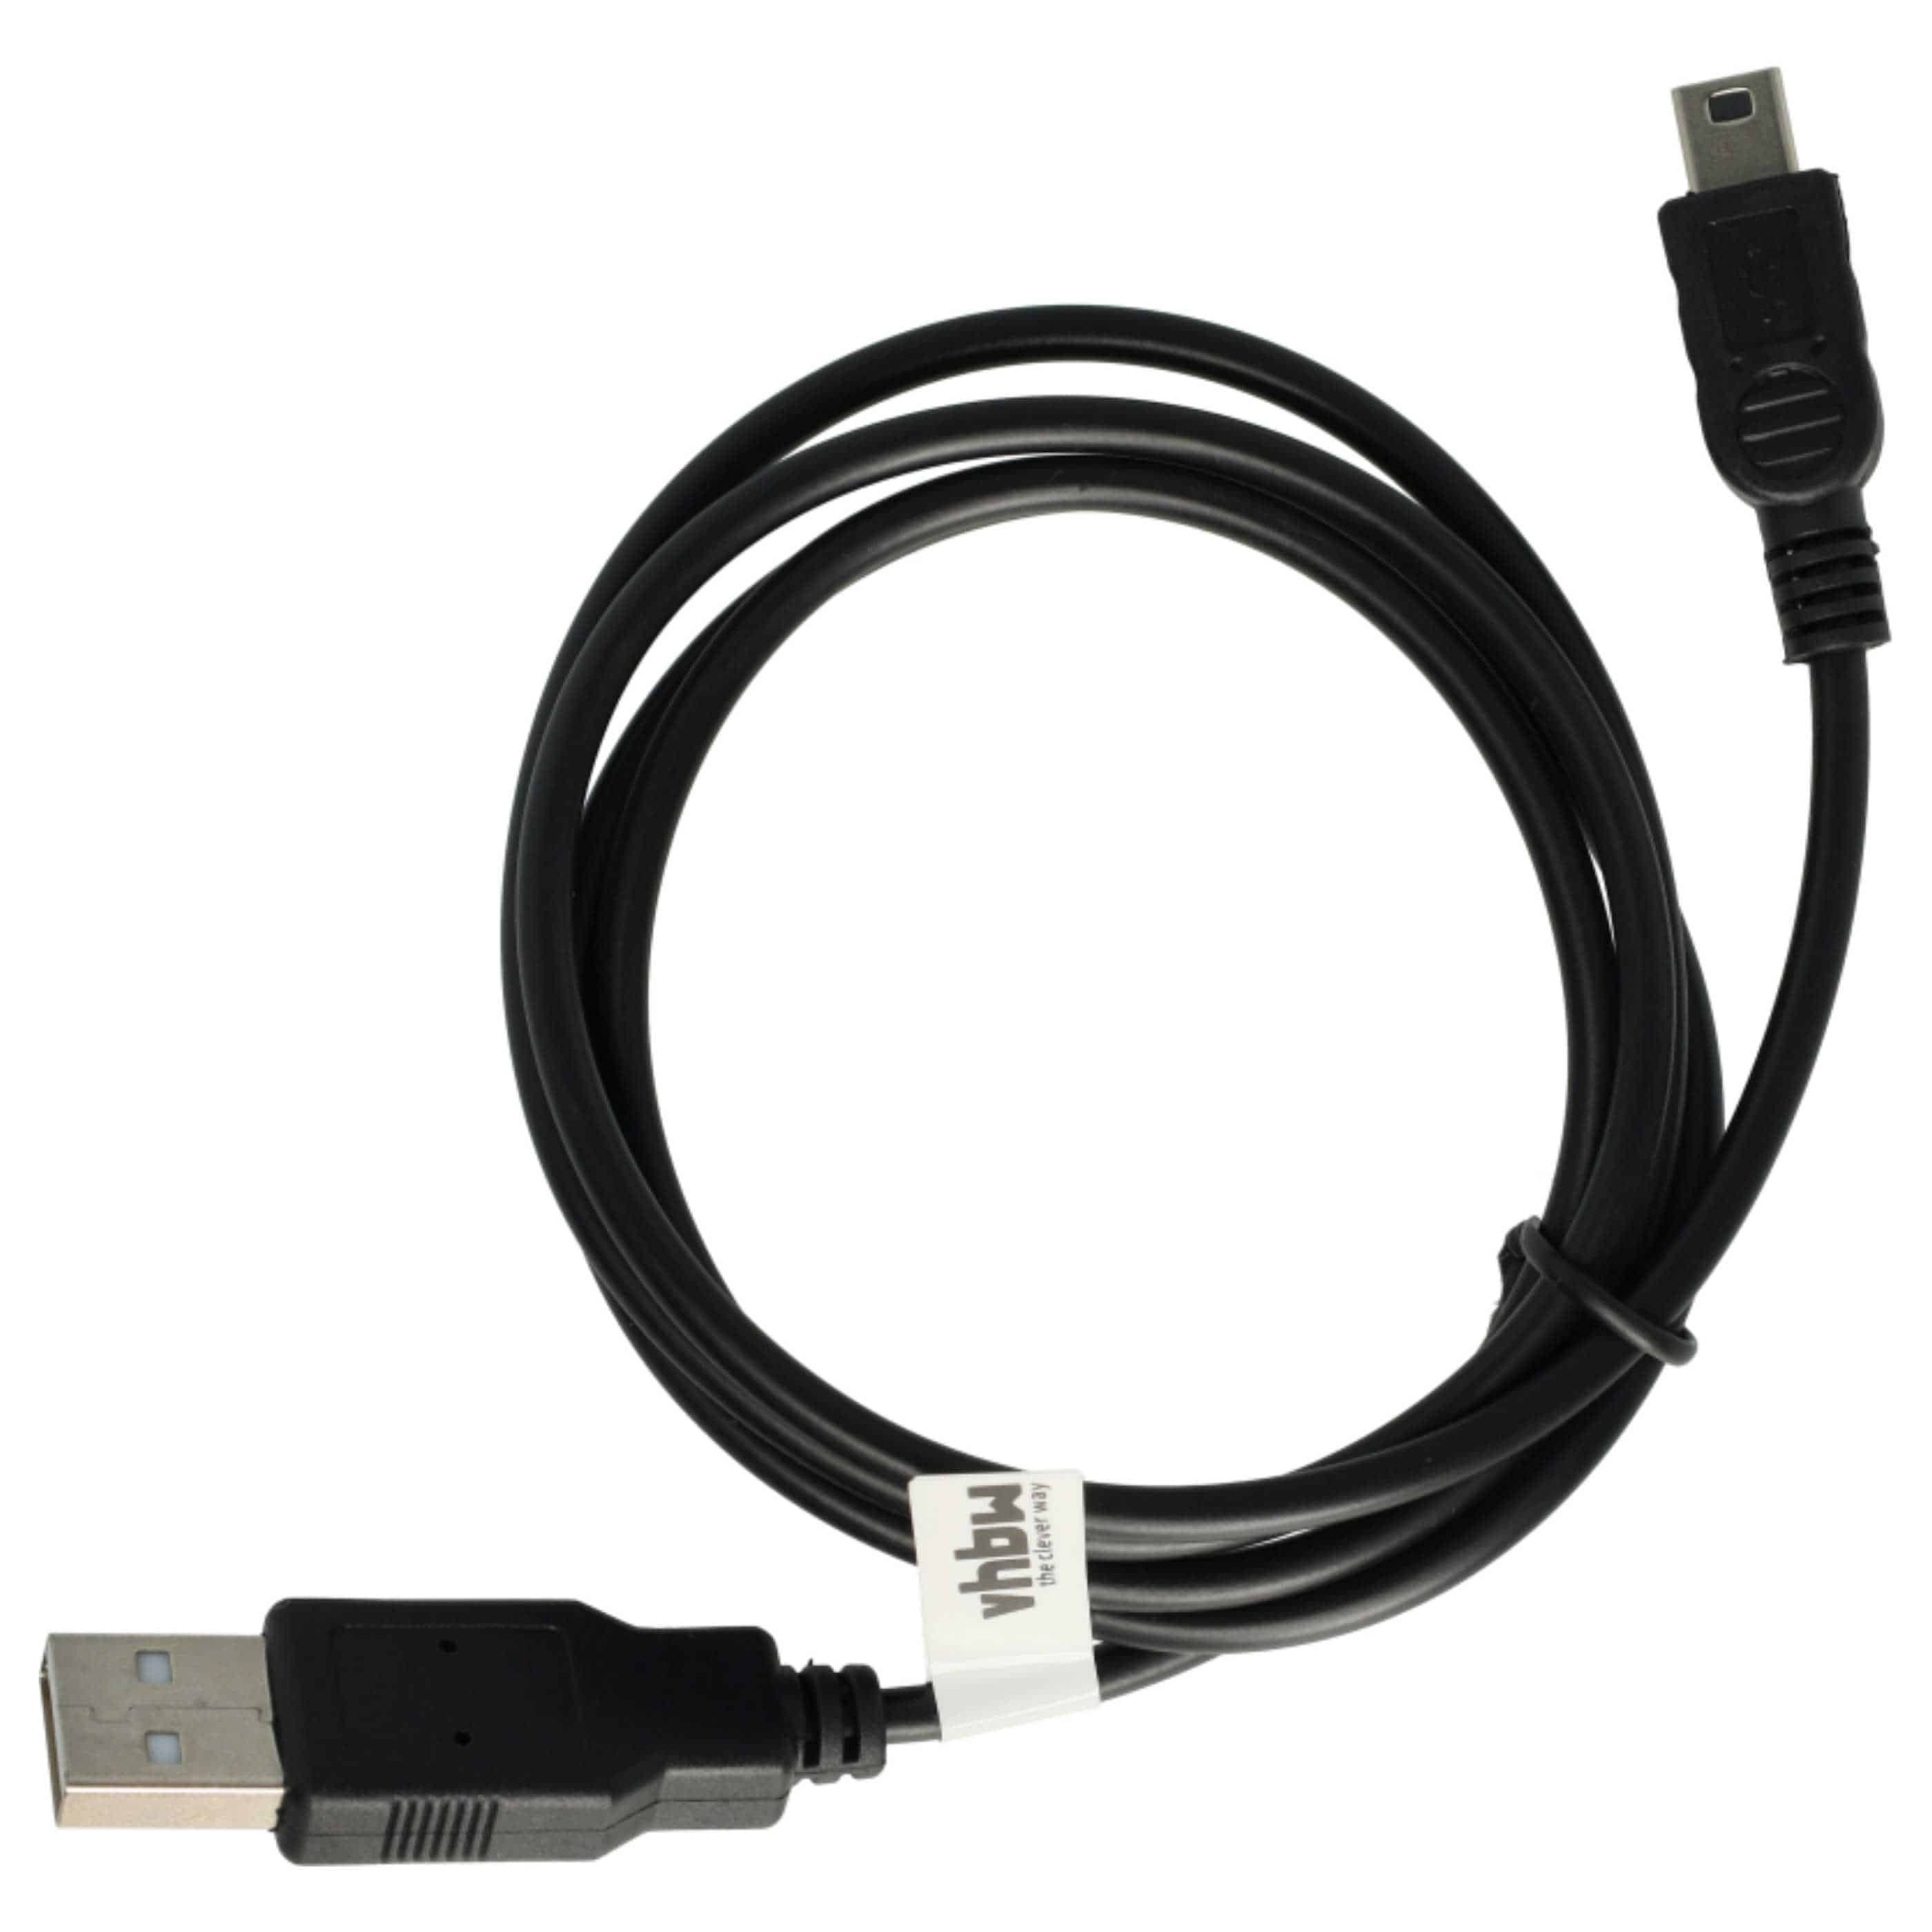 Cable de datos USB reemplaza Nikon UC-E15, UC-E3, UC-E4, UC-E5 para cámaras Cect - 100 cm